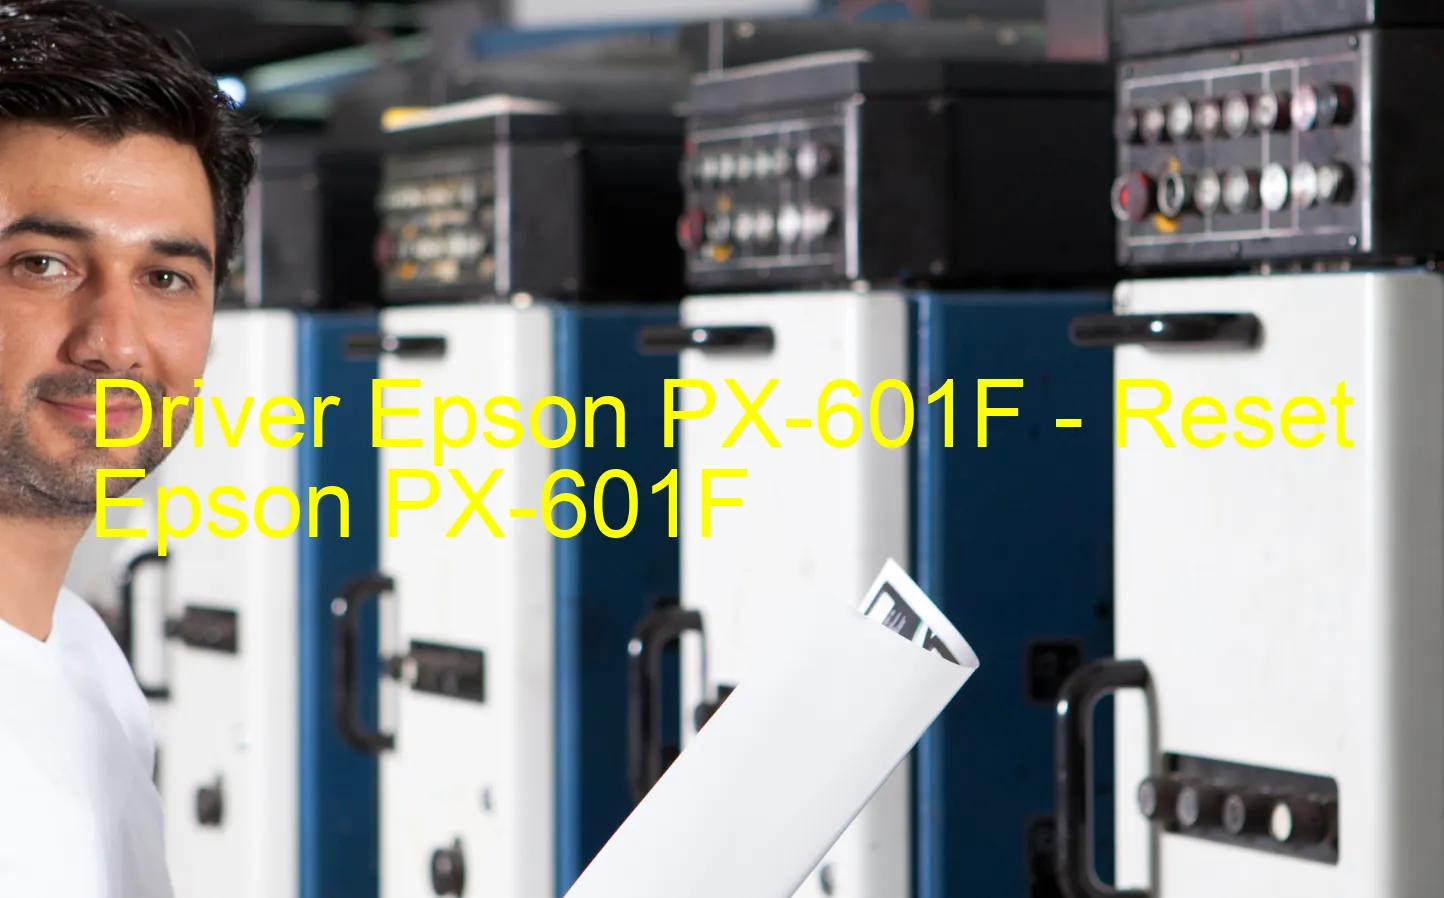 Epson PX-601Fのドライバー、Epson PX-601Fのリセットソフトウェア